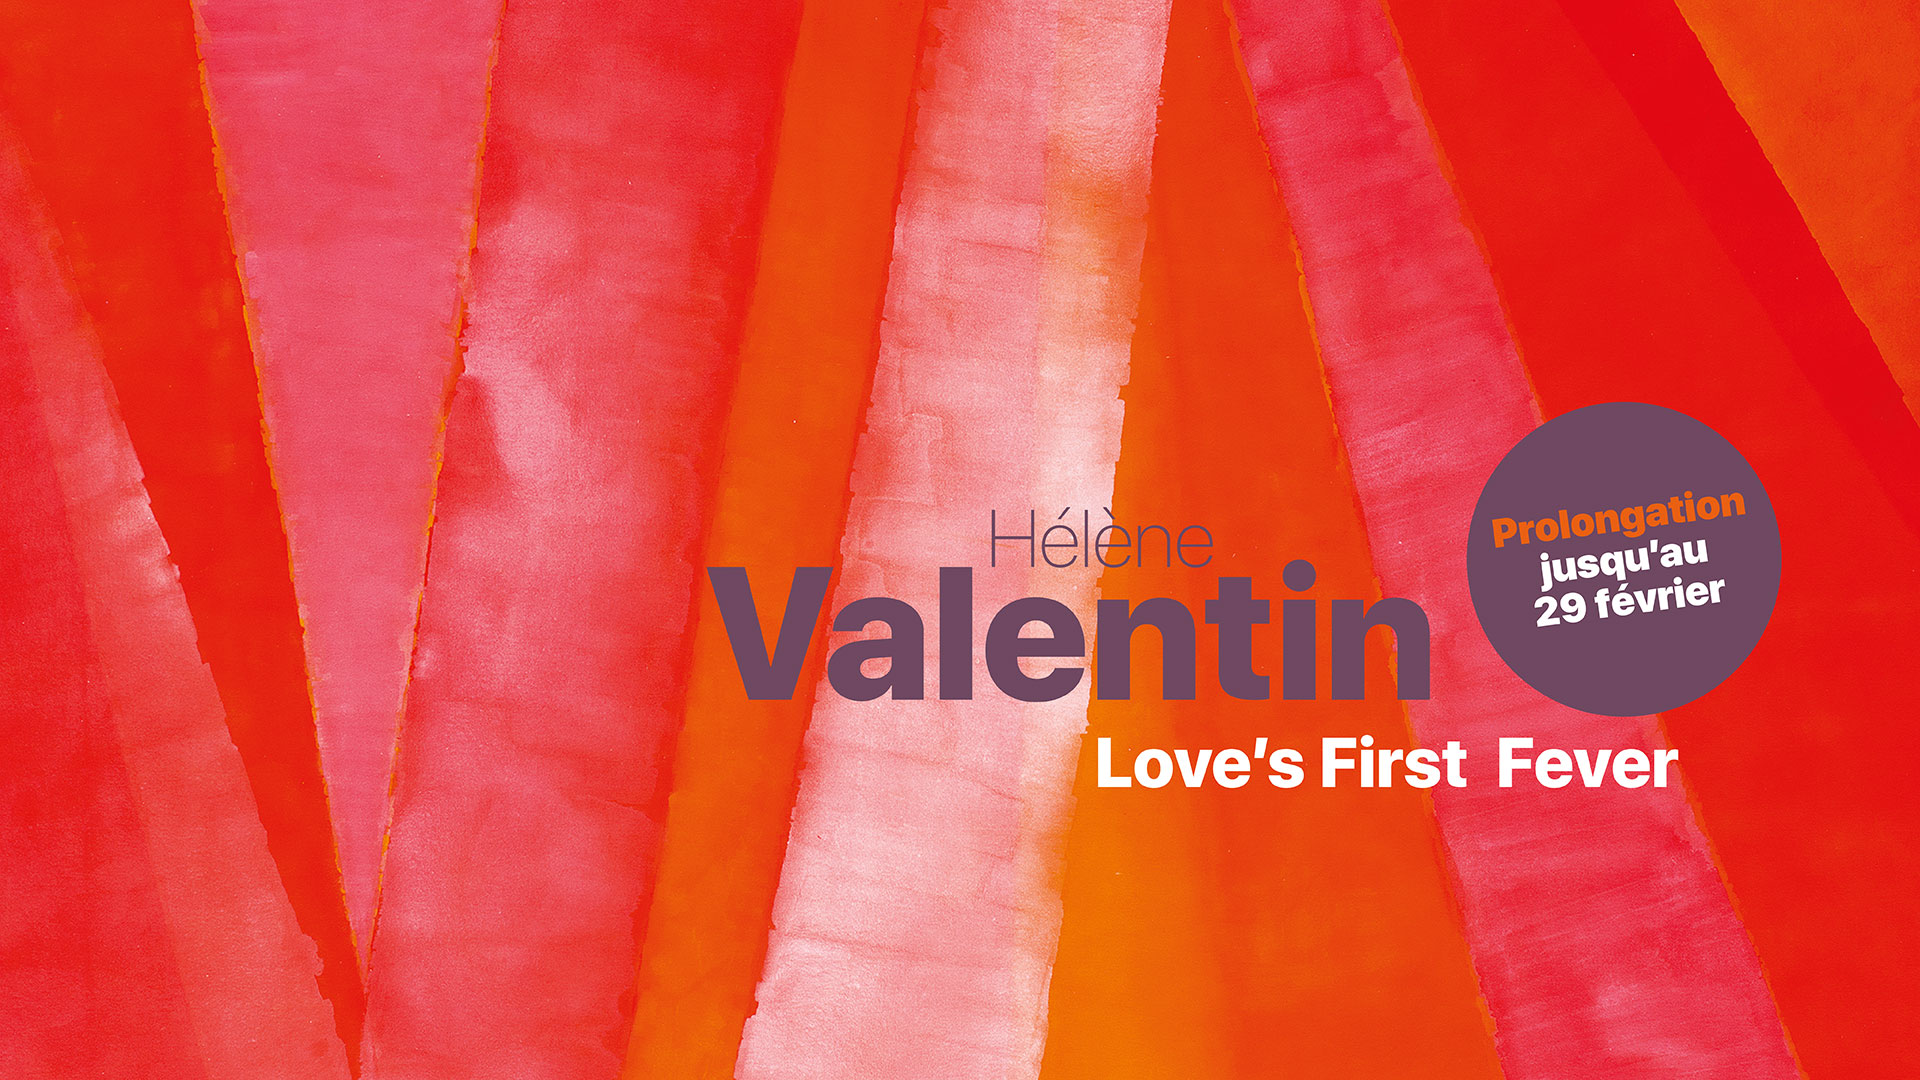 Hélène Valentin - Love’s First Fever - Prolongation jusqu'au 29 février